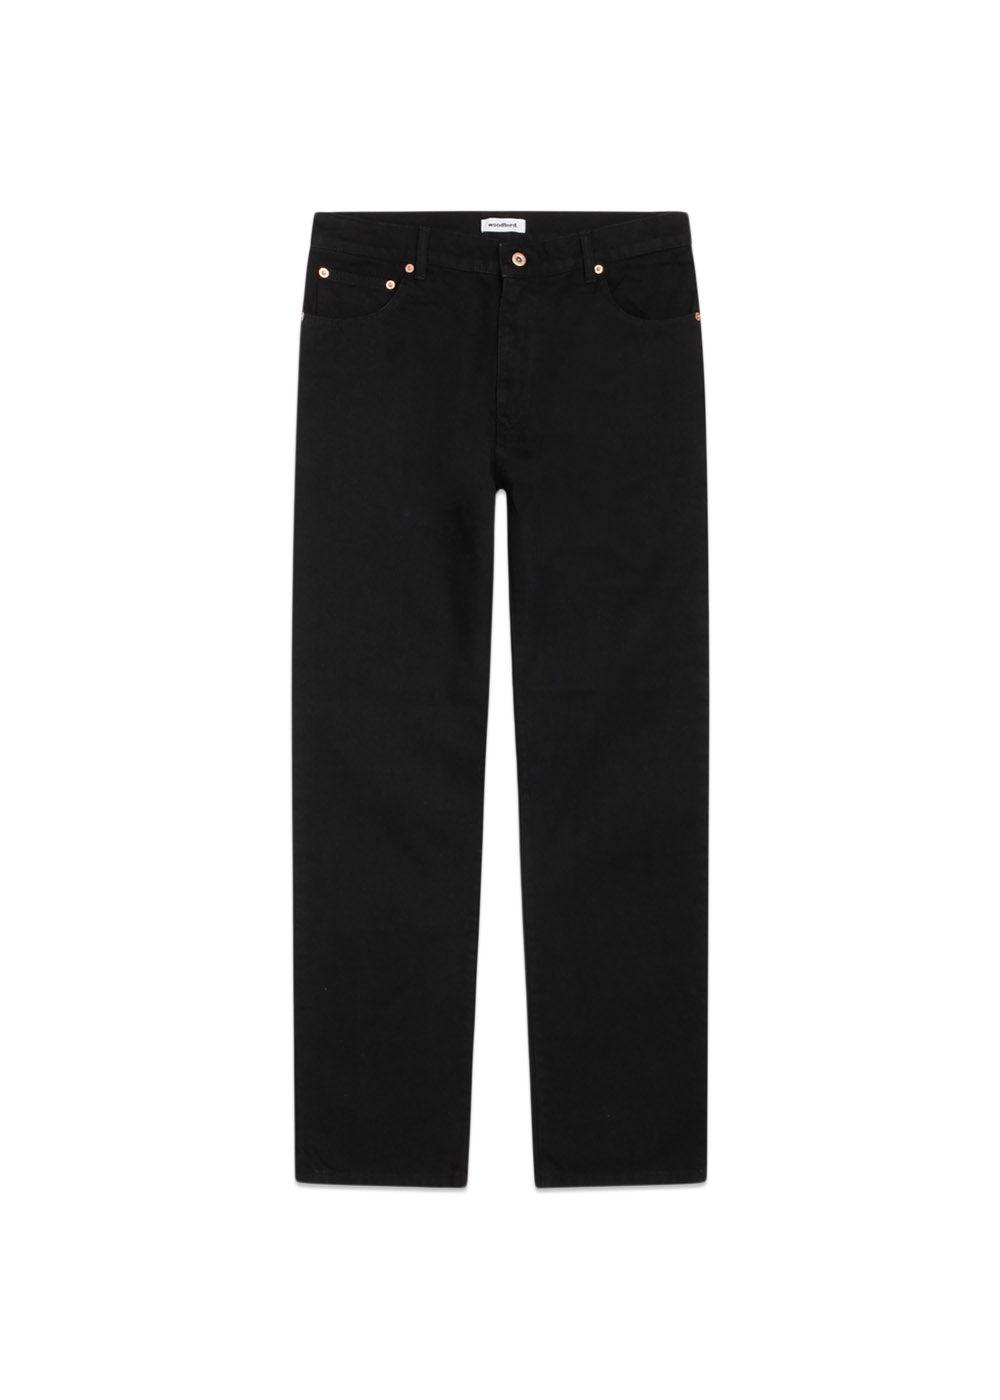 Woodbirds Leroy Craven Black Jeans - Black. Køb jeans her.